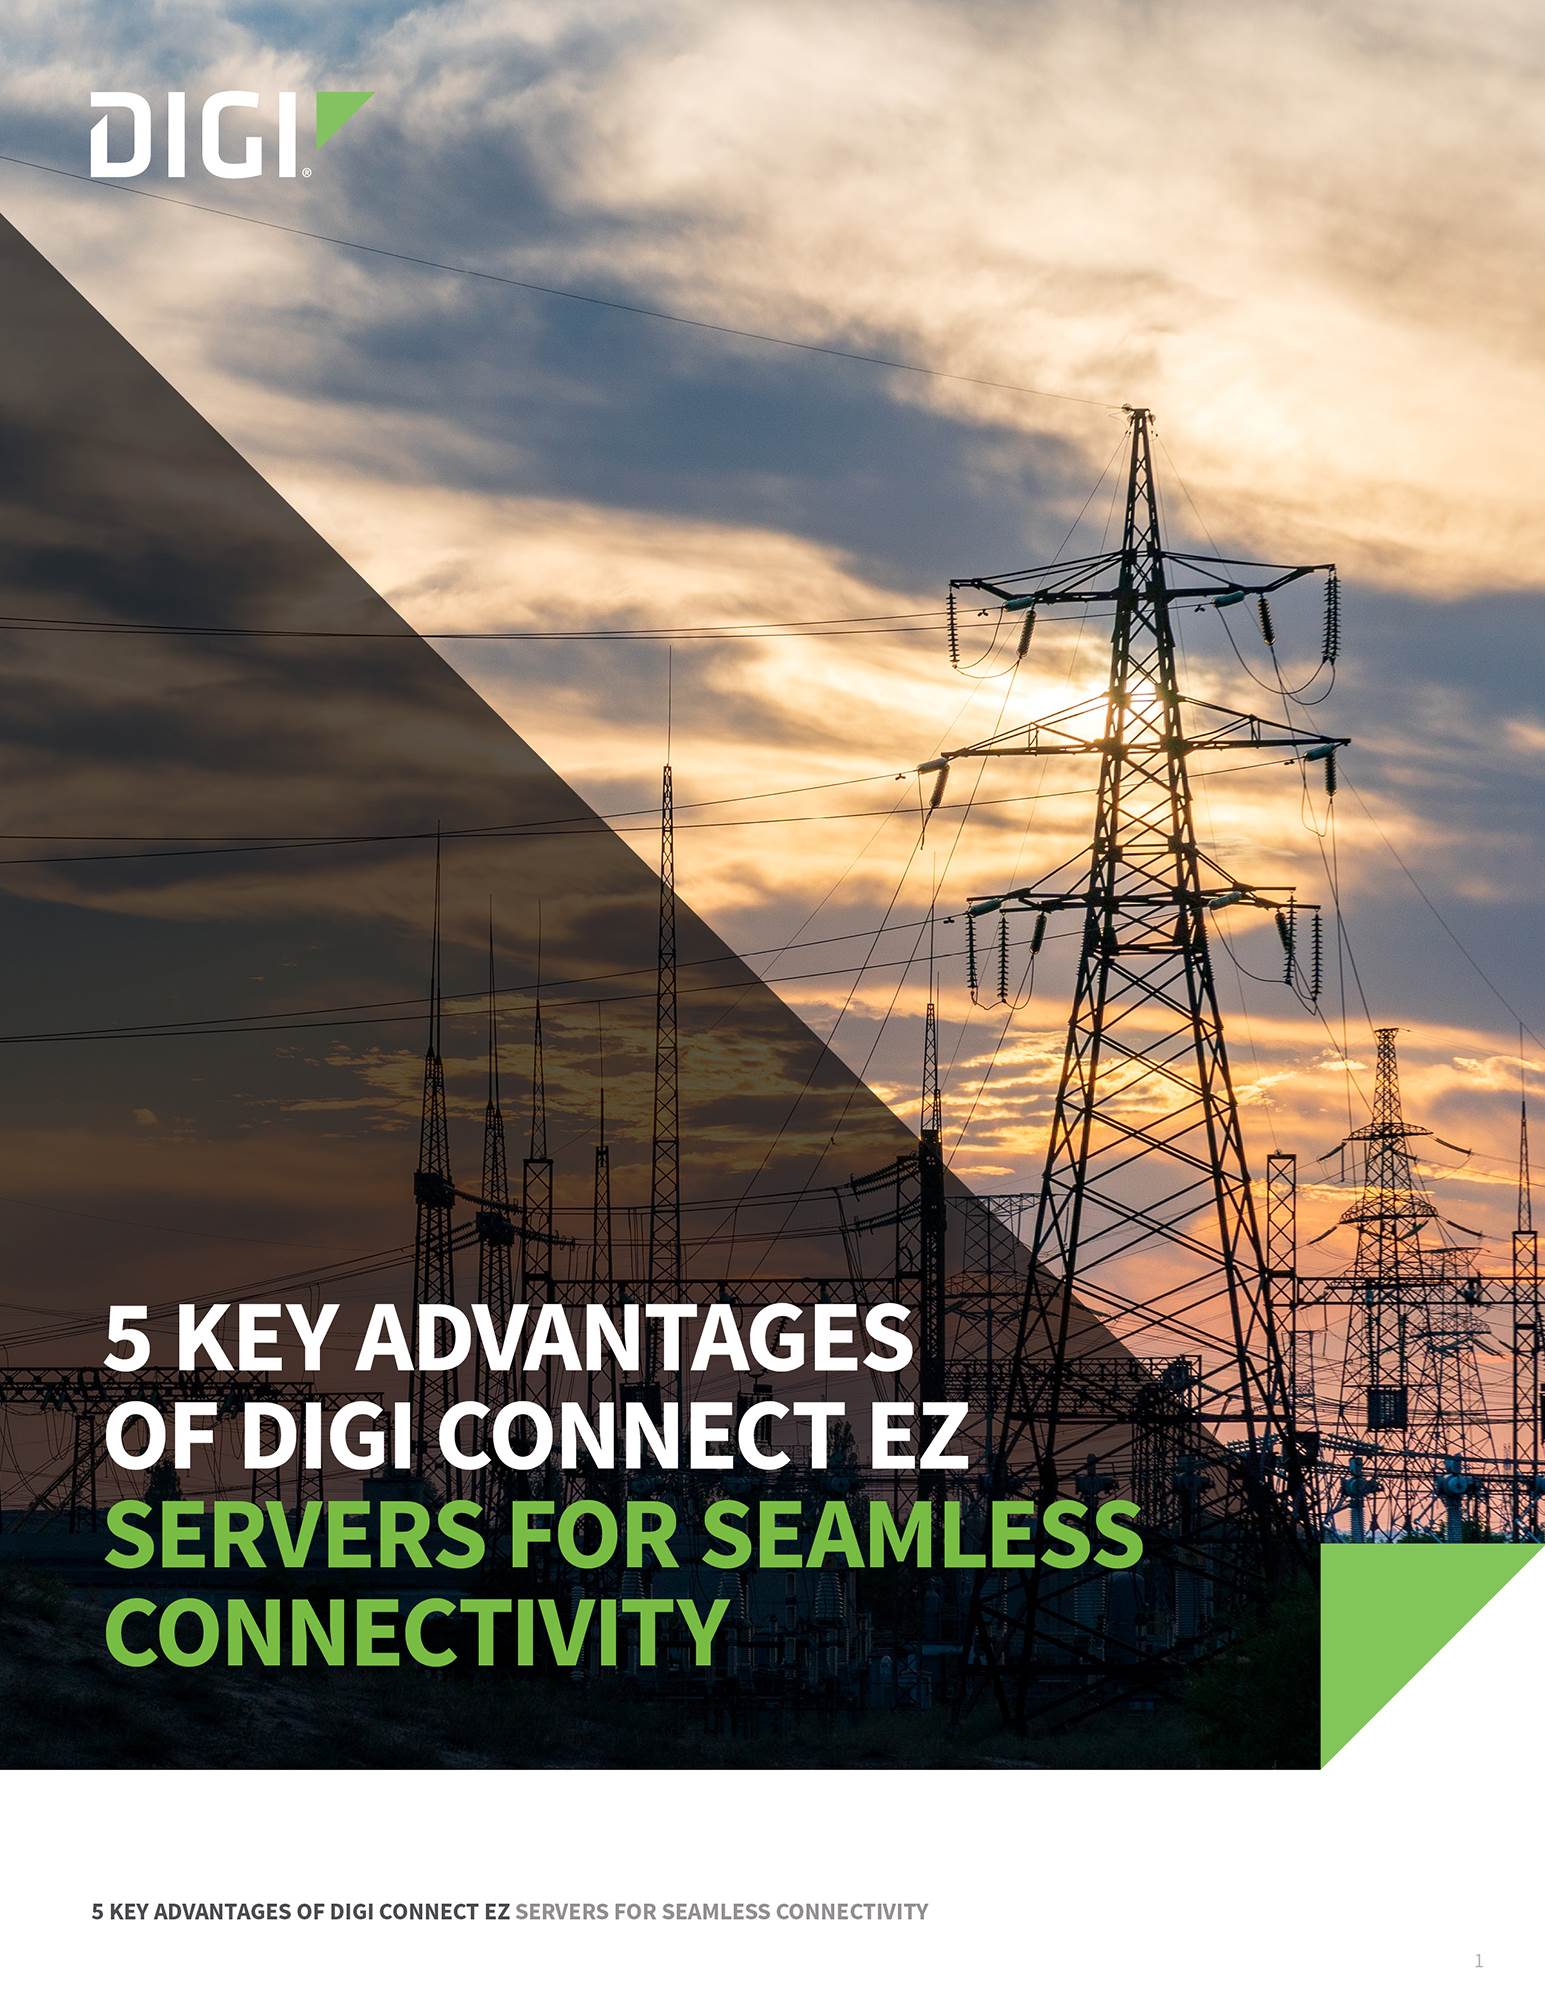 5 ventajas clave de los servidores Digi Connect EZ para una conectividad perfecta portada